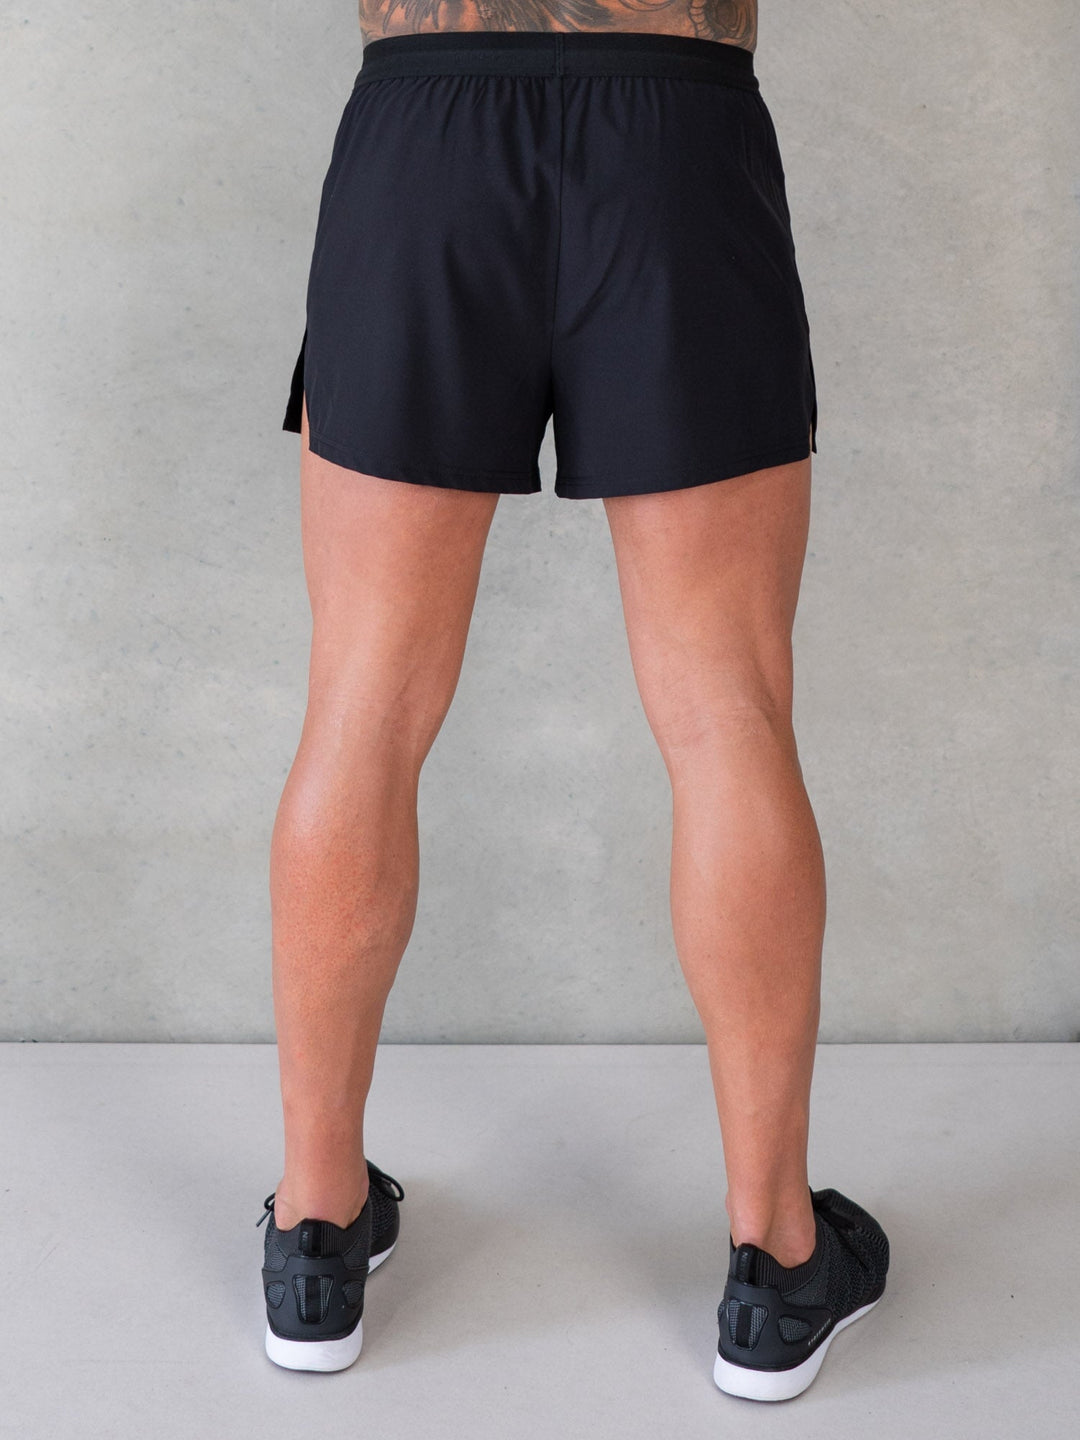 Training Shorts - Black Clothing Ryderwear 